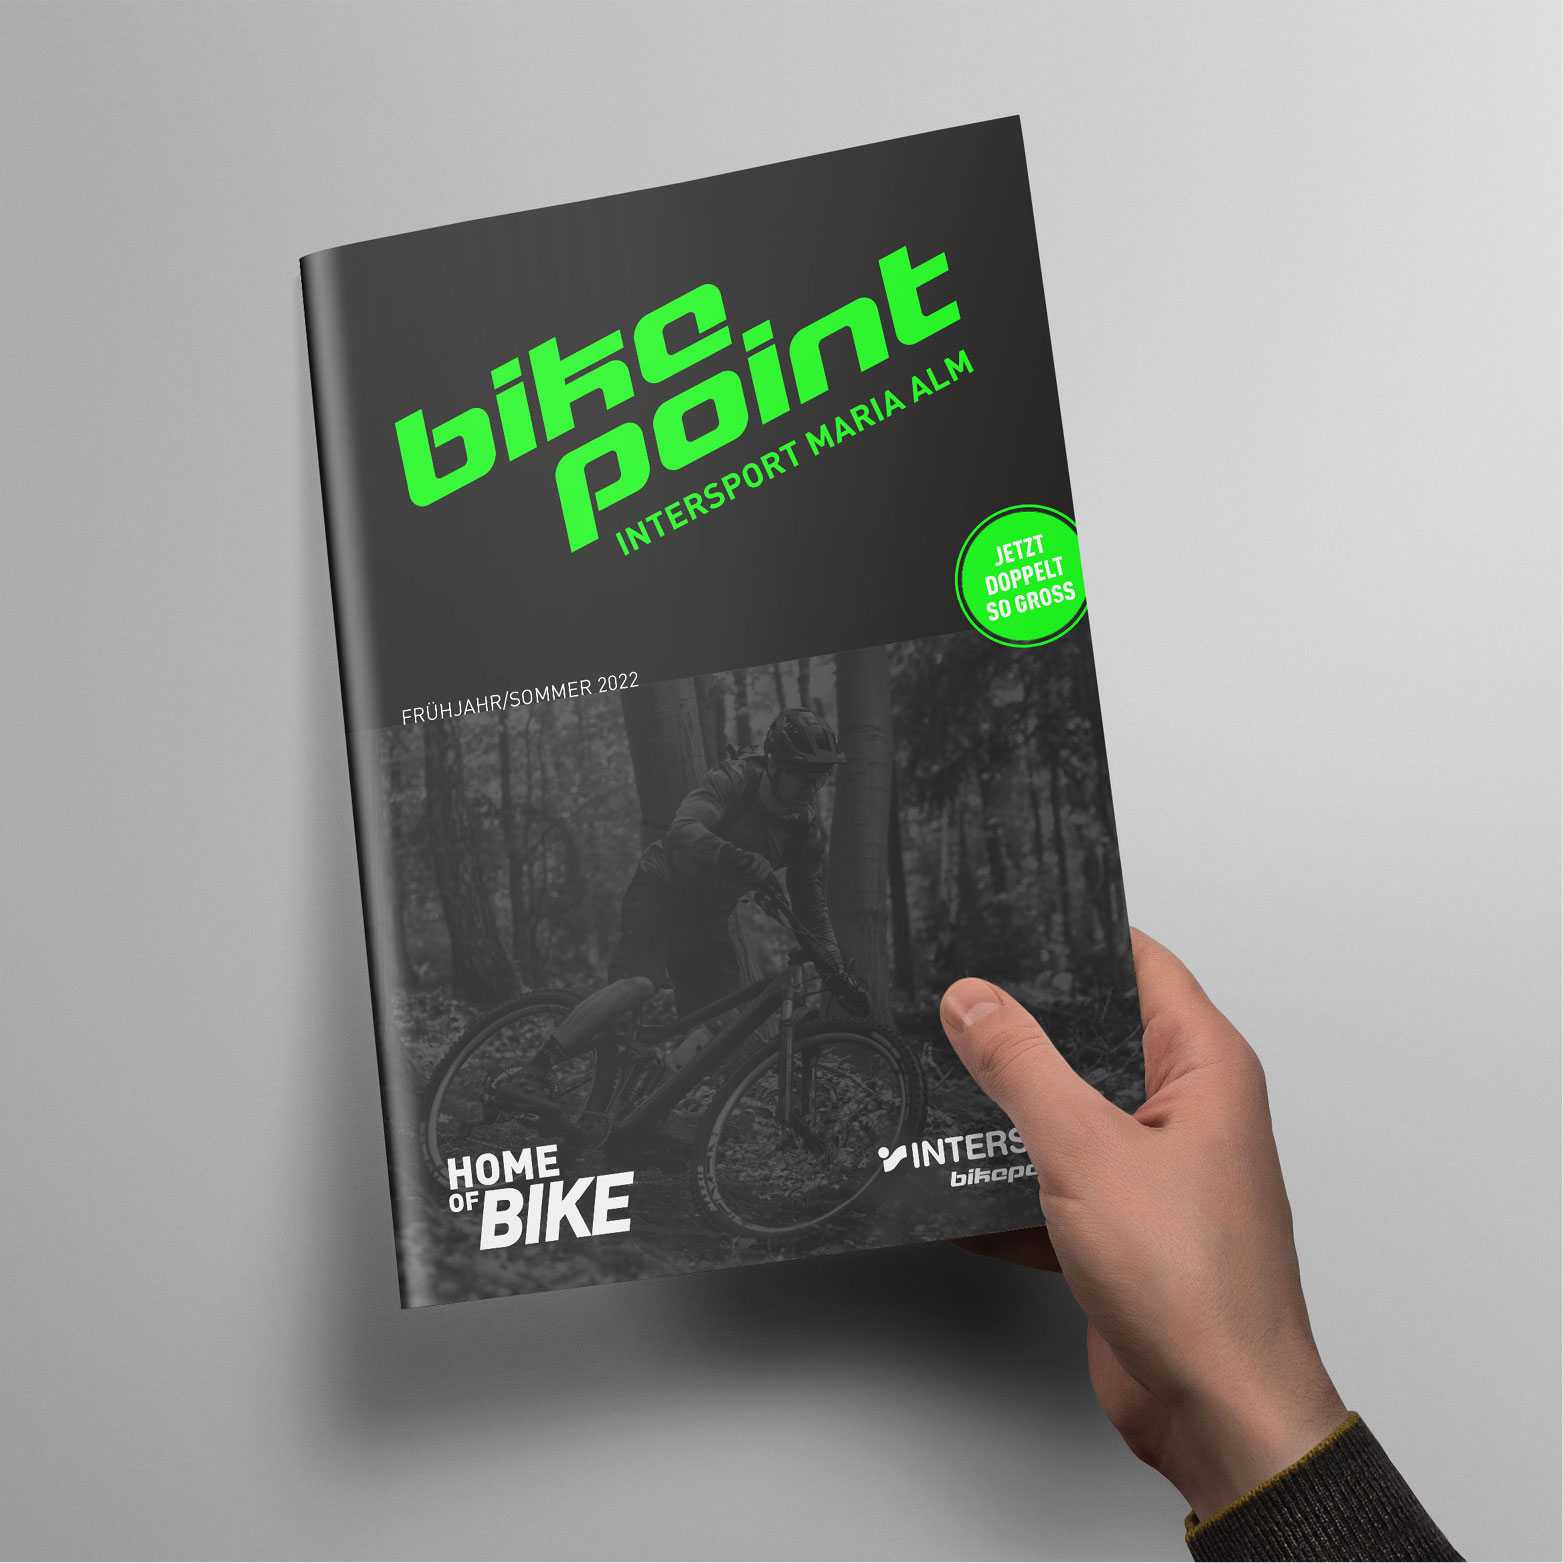 Der neue Bike Katalog von bikepoint INTERSPORT Maria Alm